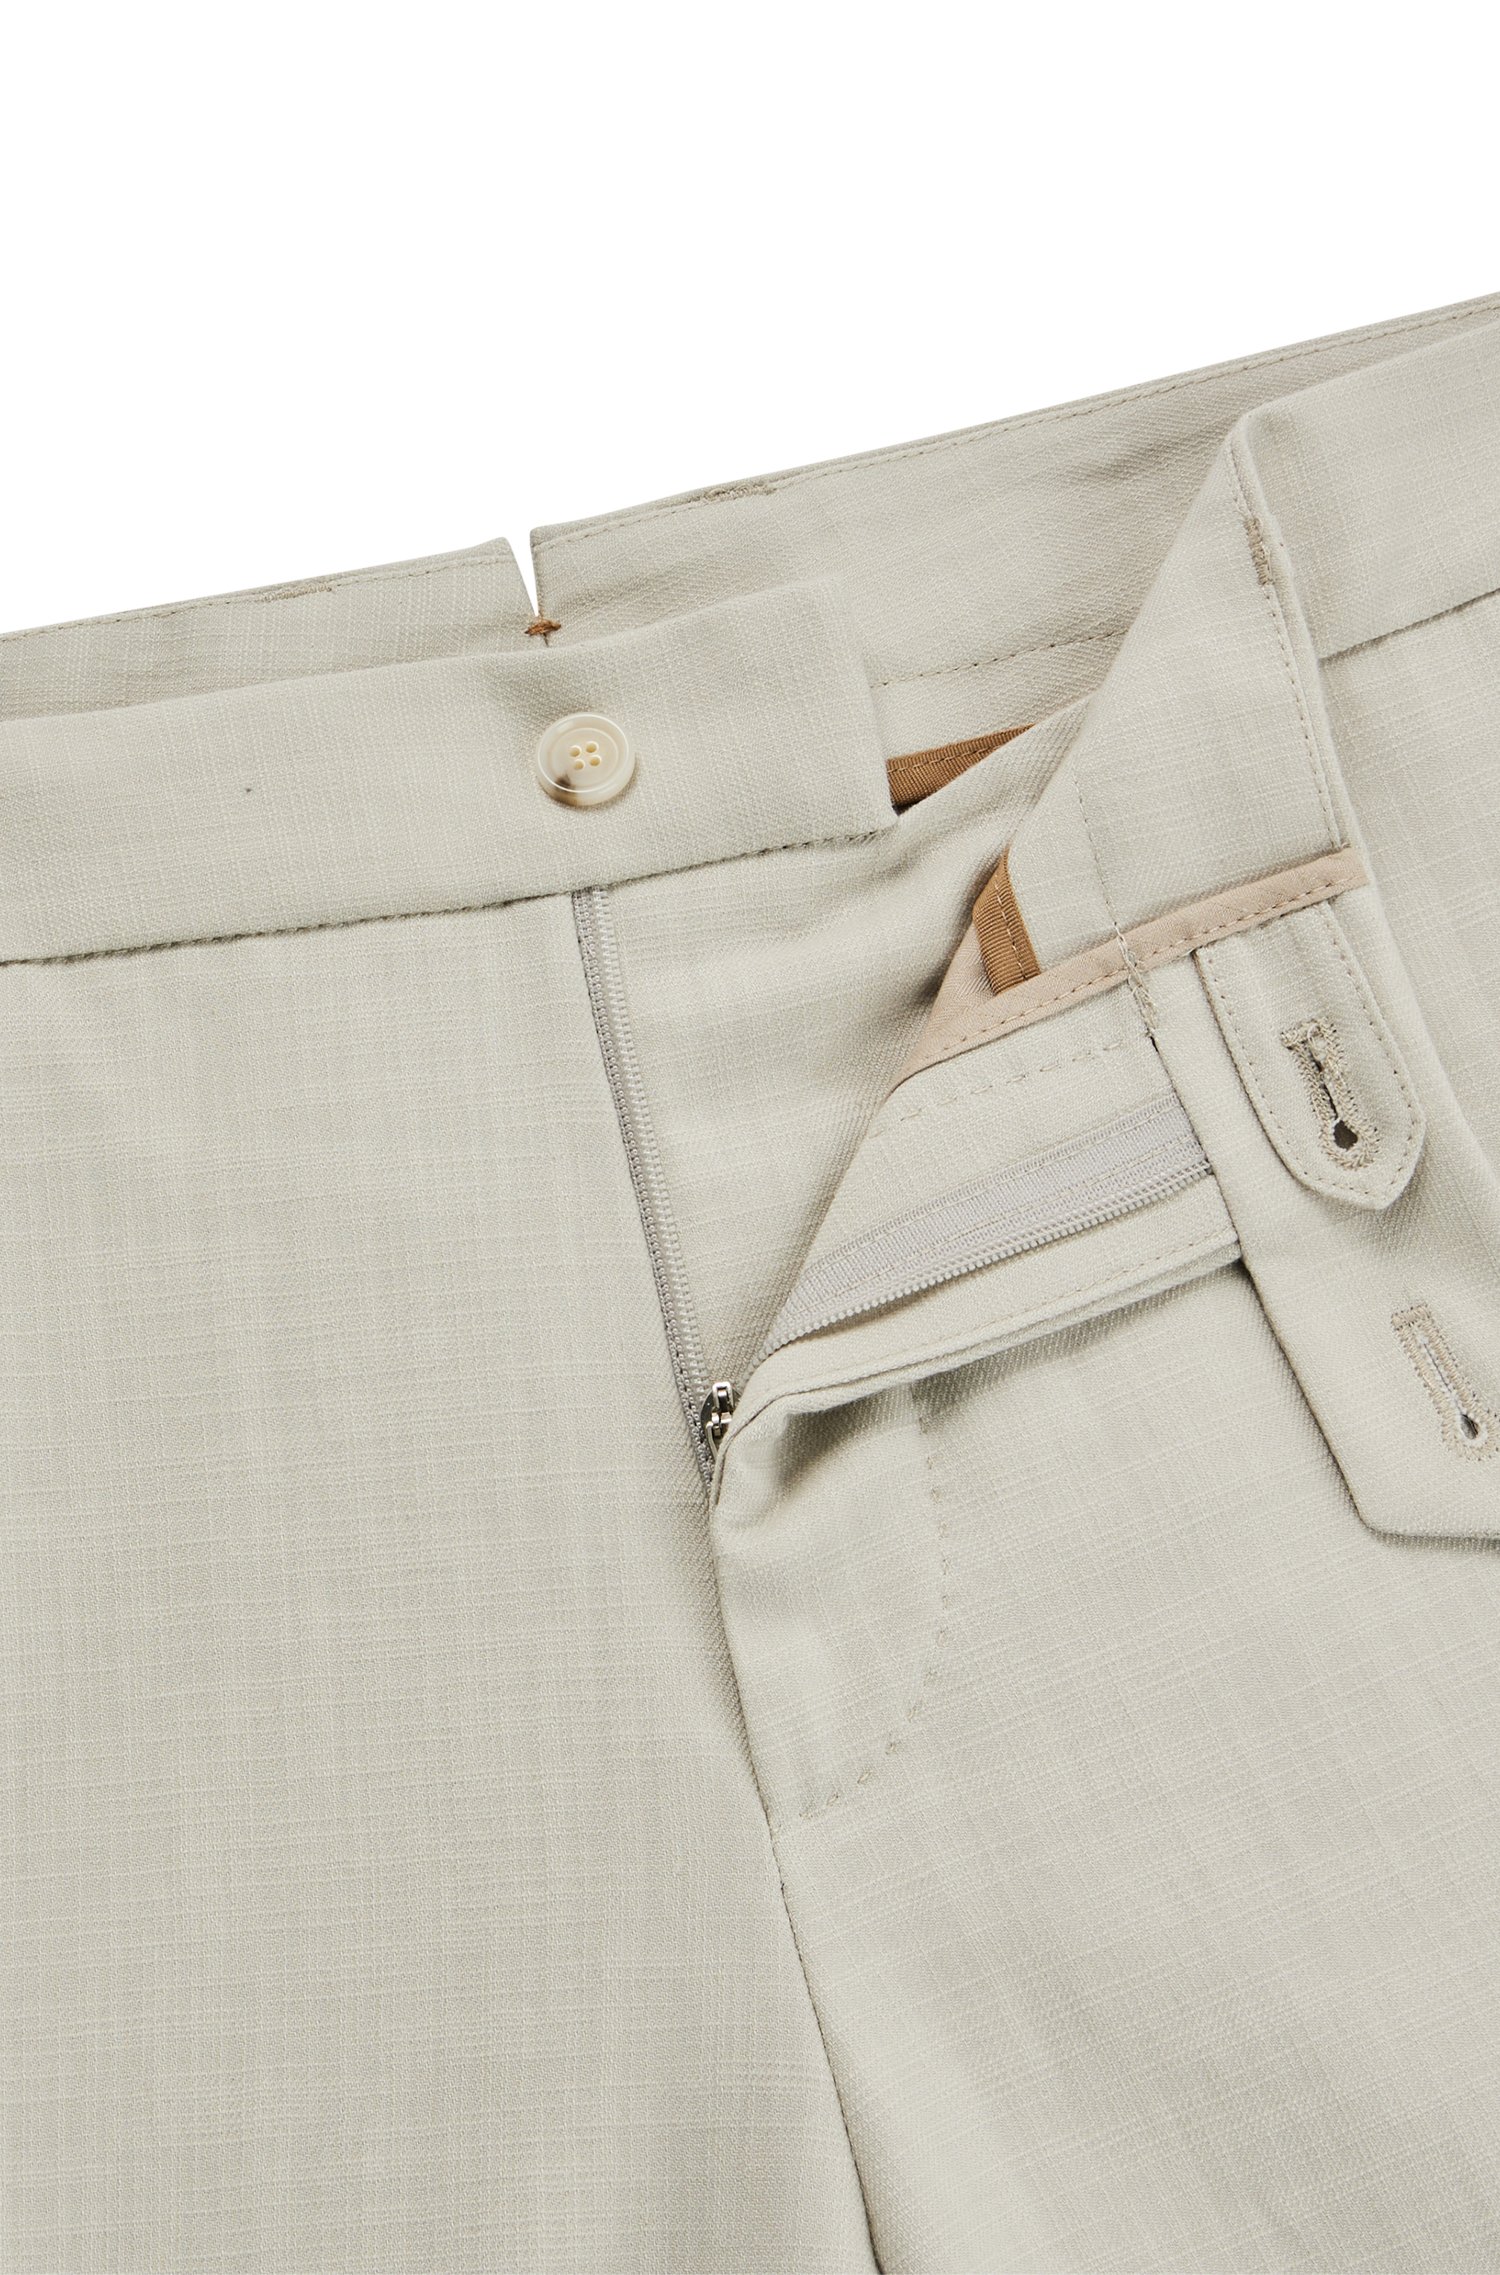 Pantalones slim fit de material elástico con microestampado